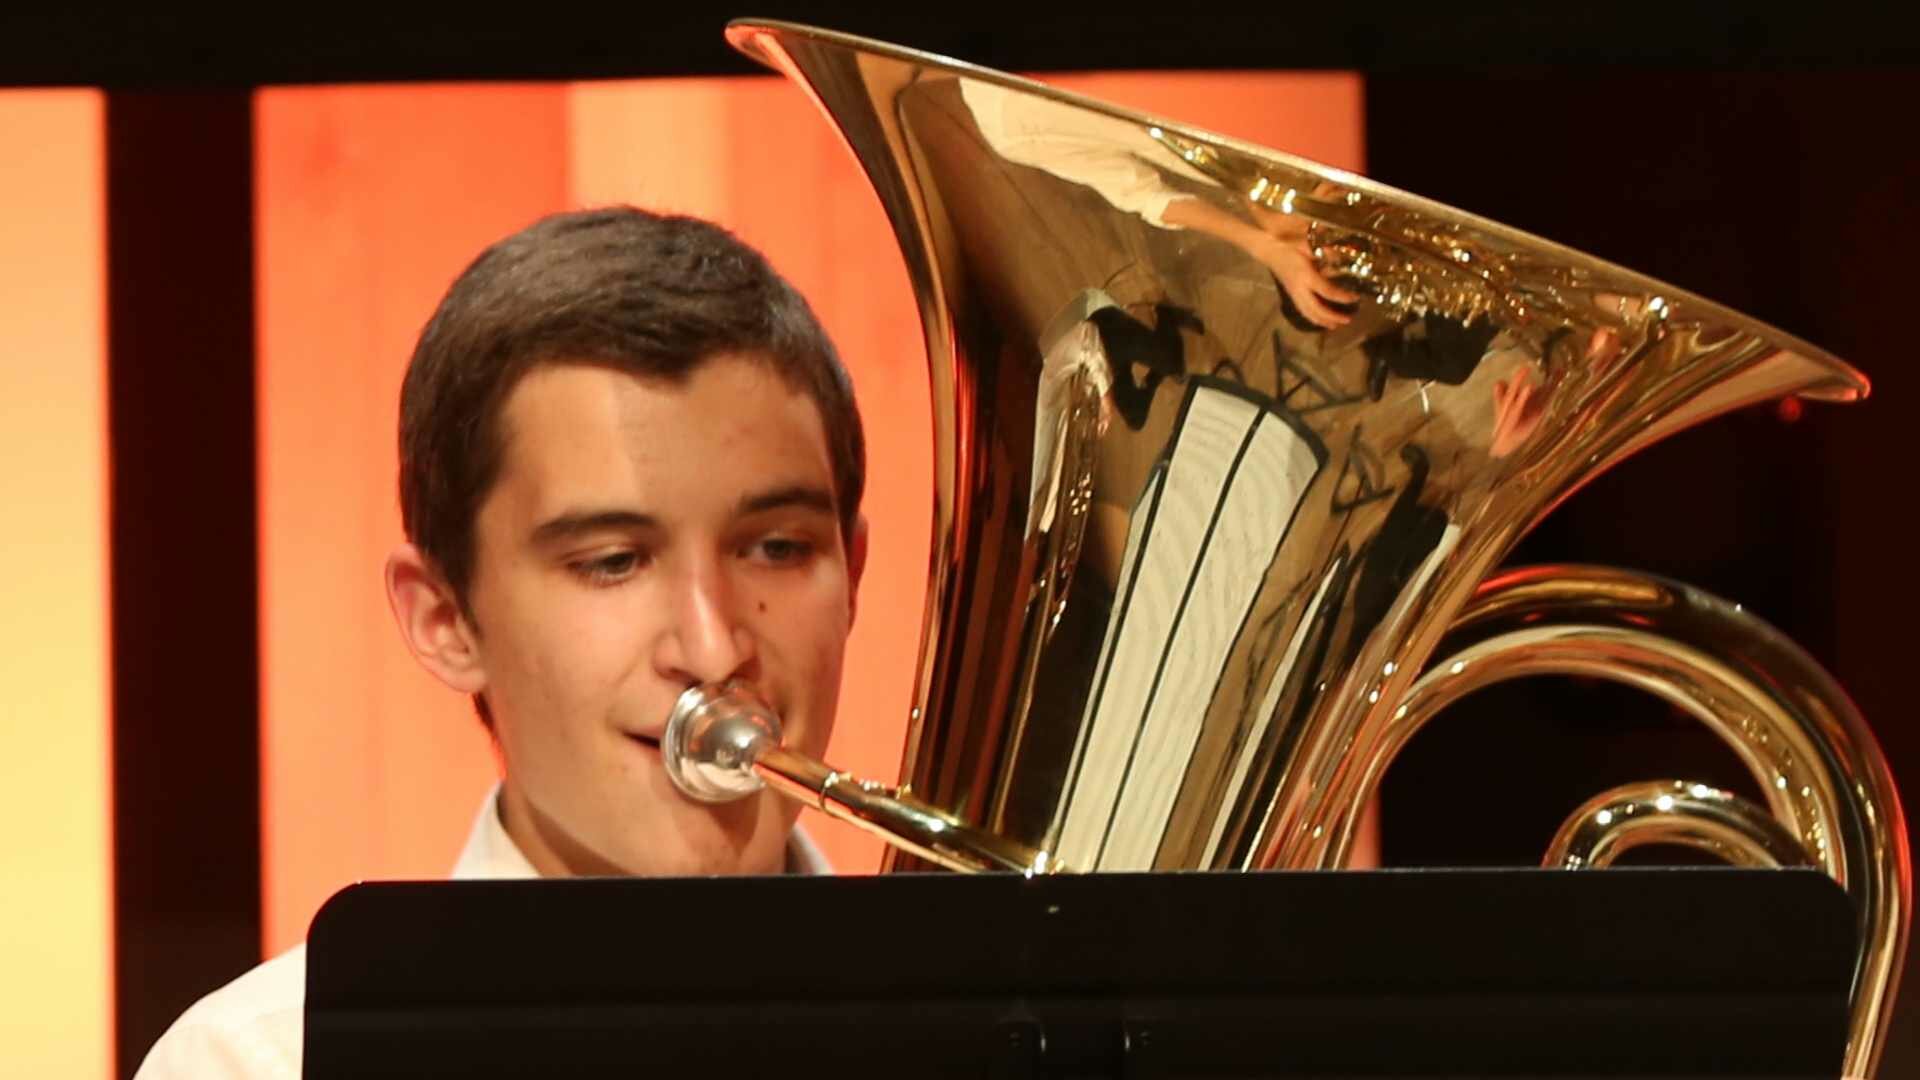 Mátyás Kapitány spielt Tuba auf einer Konzertbühne